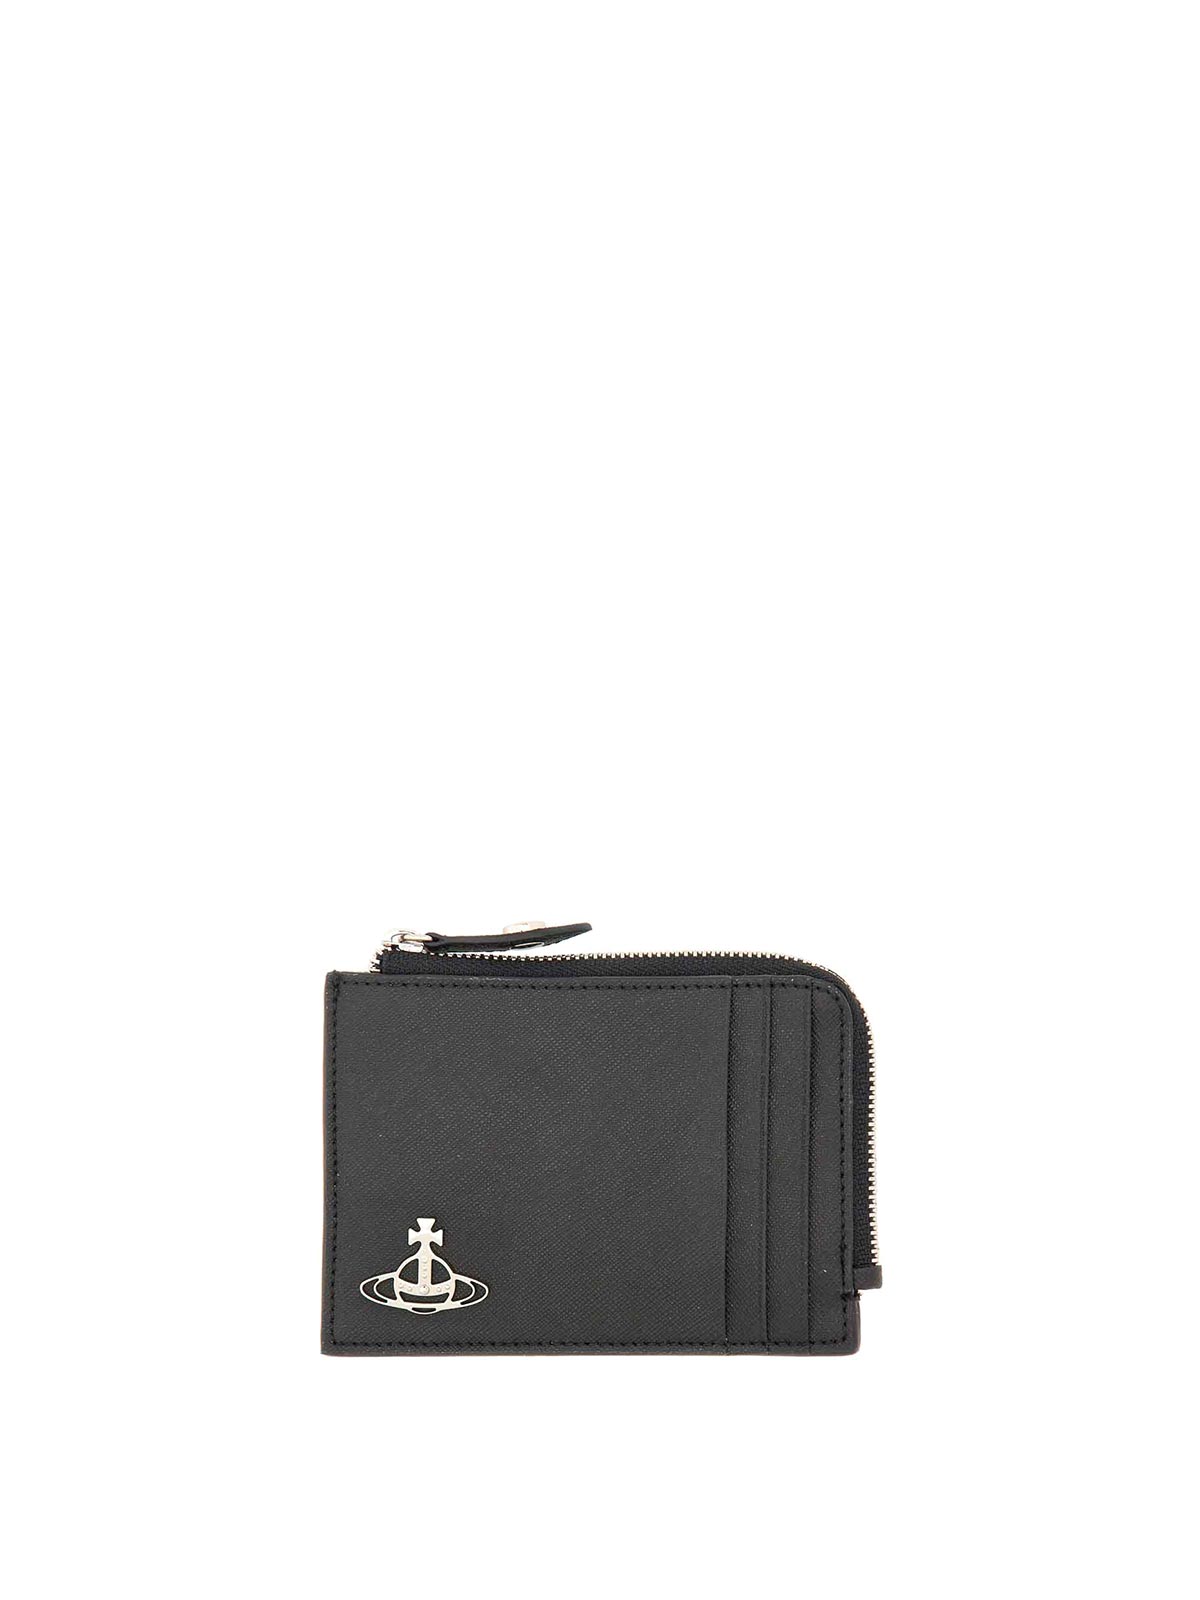 Vivienne Westwood Wallet With Logo In Black